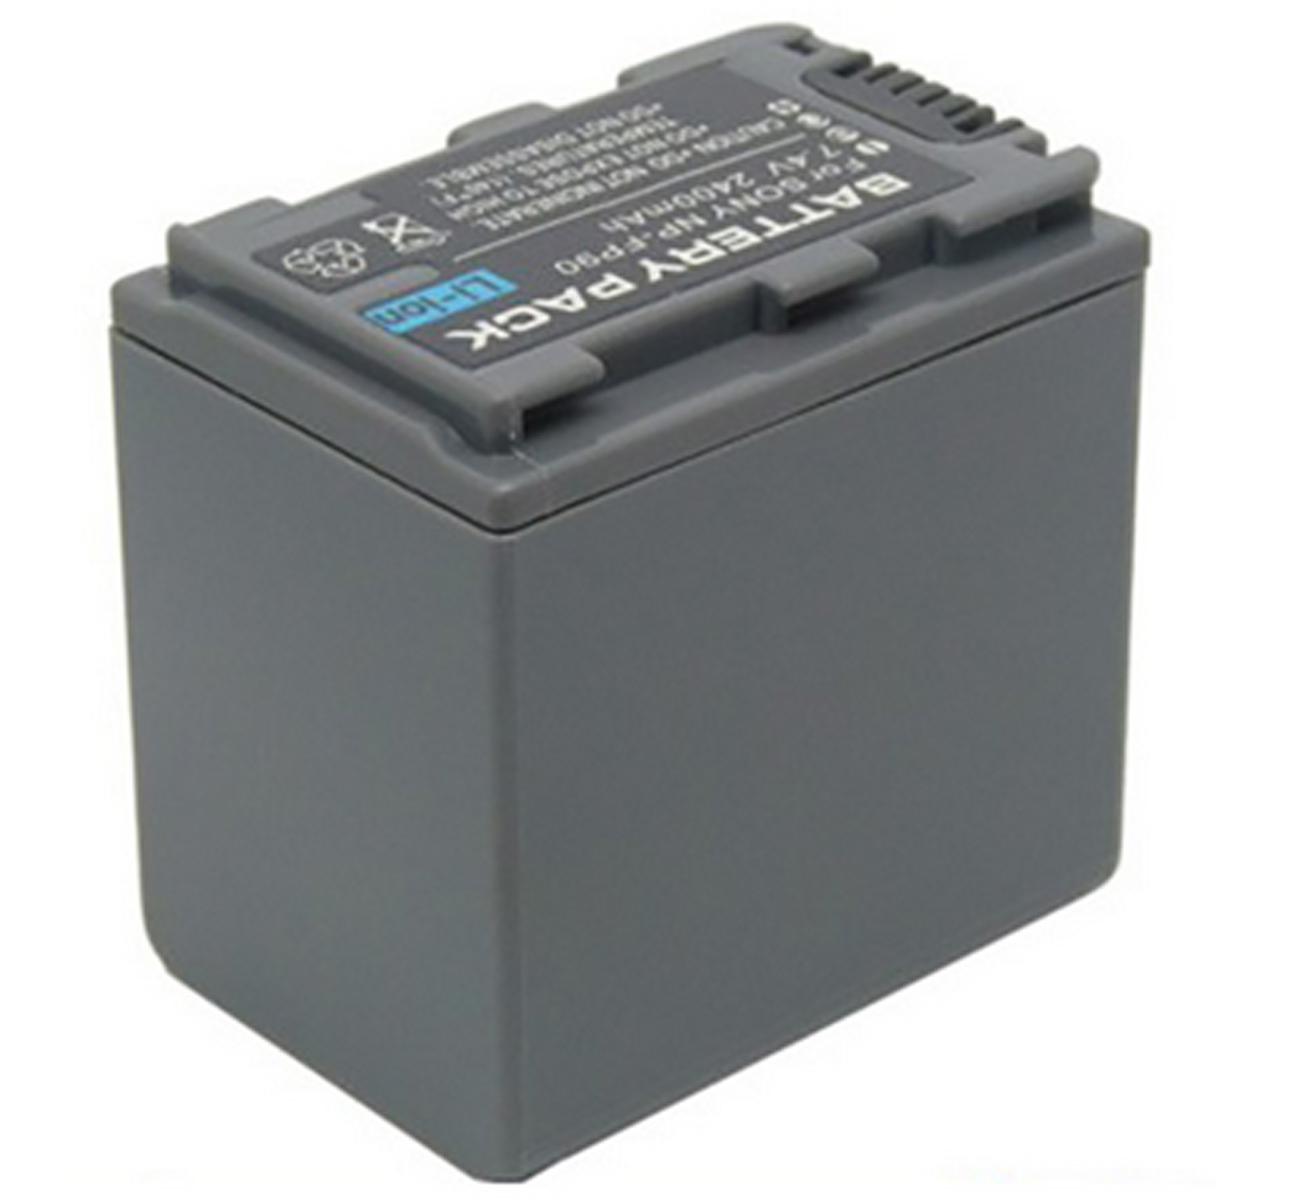 Изображение товара: Аккумулятор для Sony DCR-HC16, DCR-HC17, DCR-HC18, DCR-HC19, DCR-HC20, DCR-HC21, DCR-HC22 Handycam Camcorder